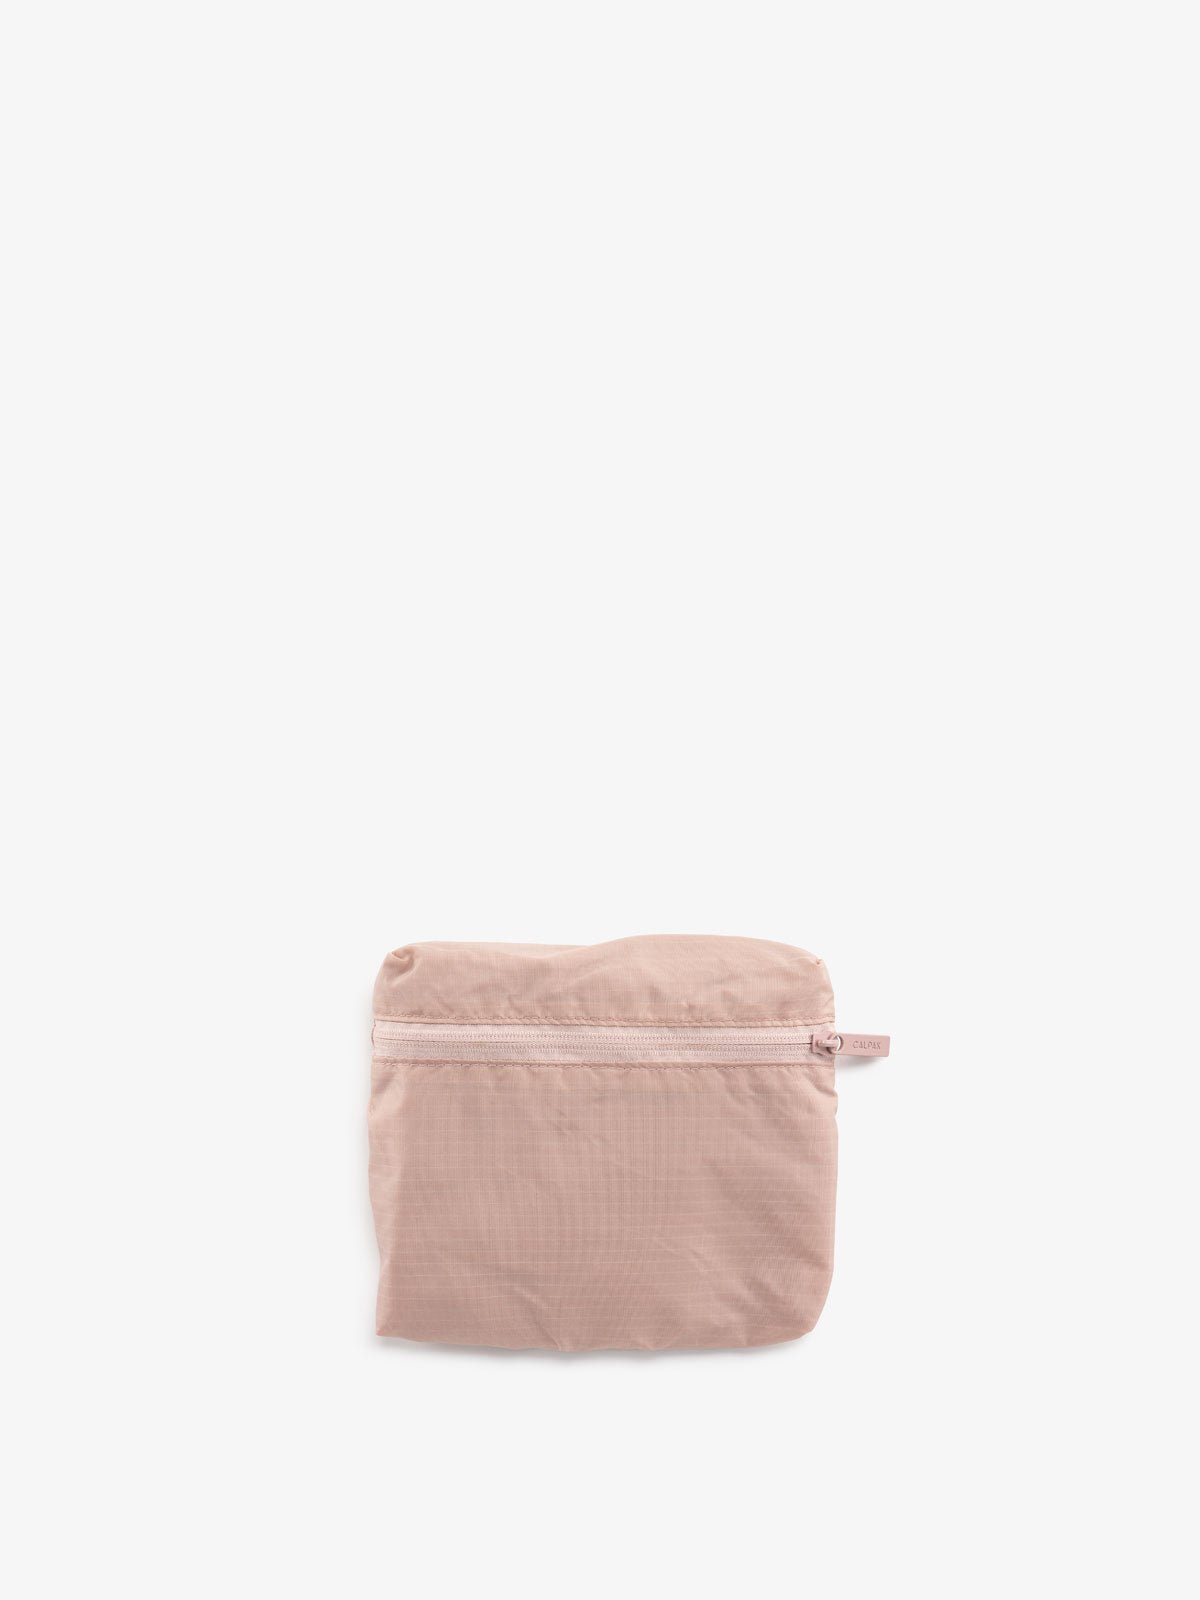 CALPAK foldable tote bag in pink